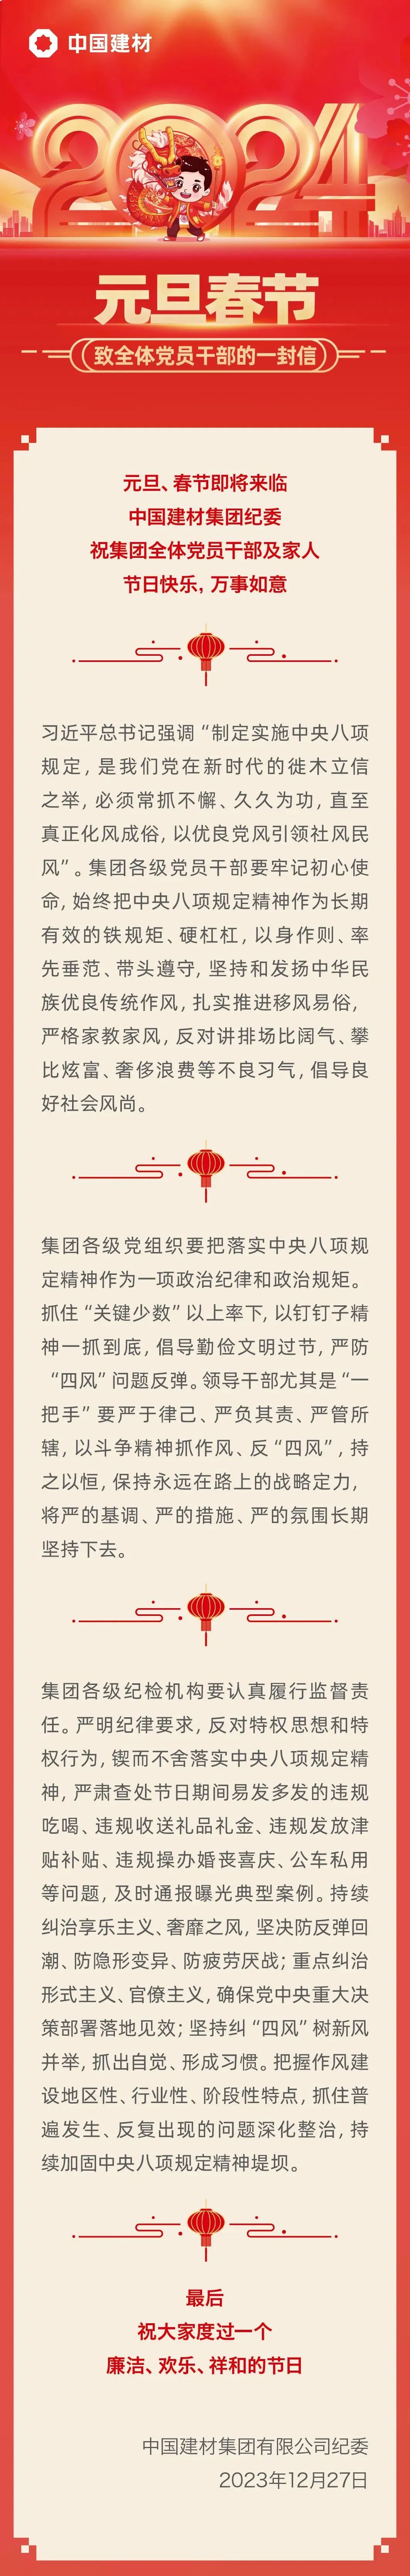 中國建材集團紀委致全體黨員干部的一封信